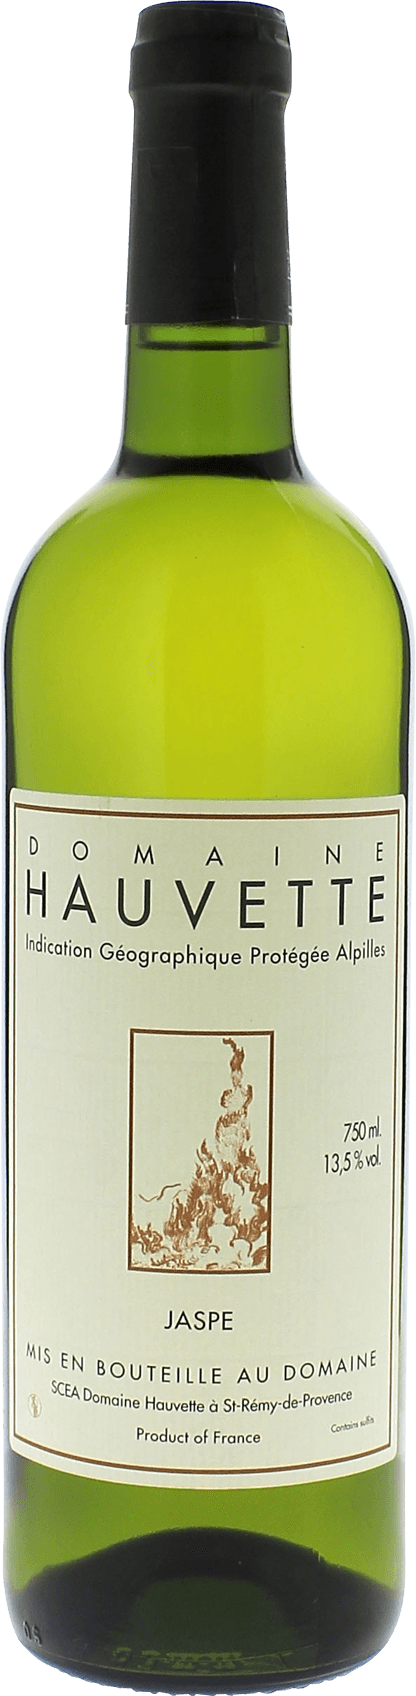 Domaine hauvette jaspe blanc 2015  Vin de Pays des Alpilles, Provence